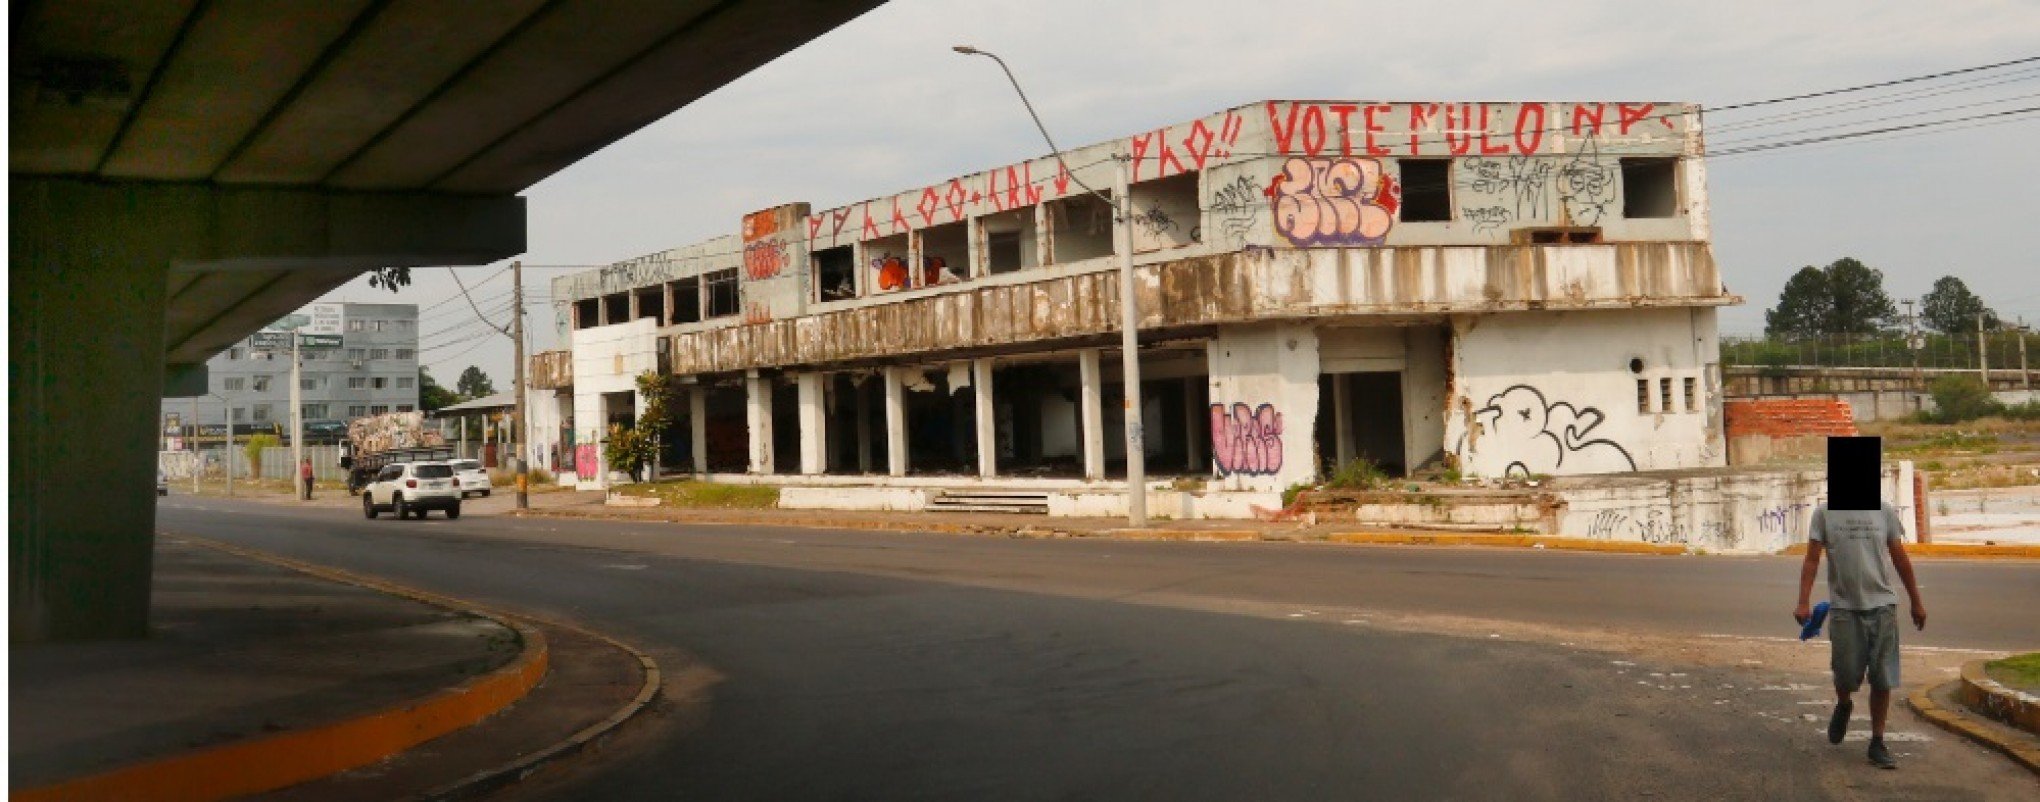 Em ruínas, antigo prédio da Metrovel se torna abrigo para usuário de crack em Canoas